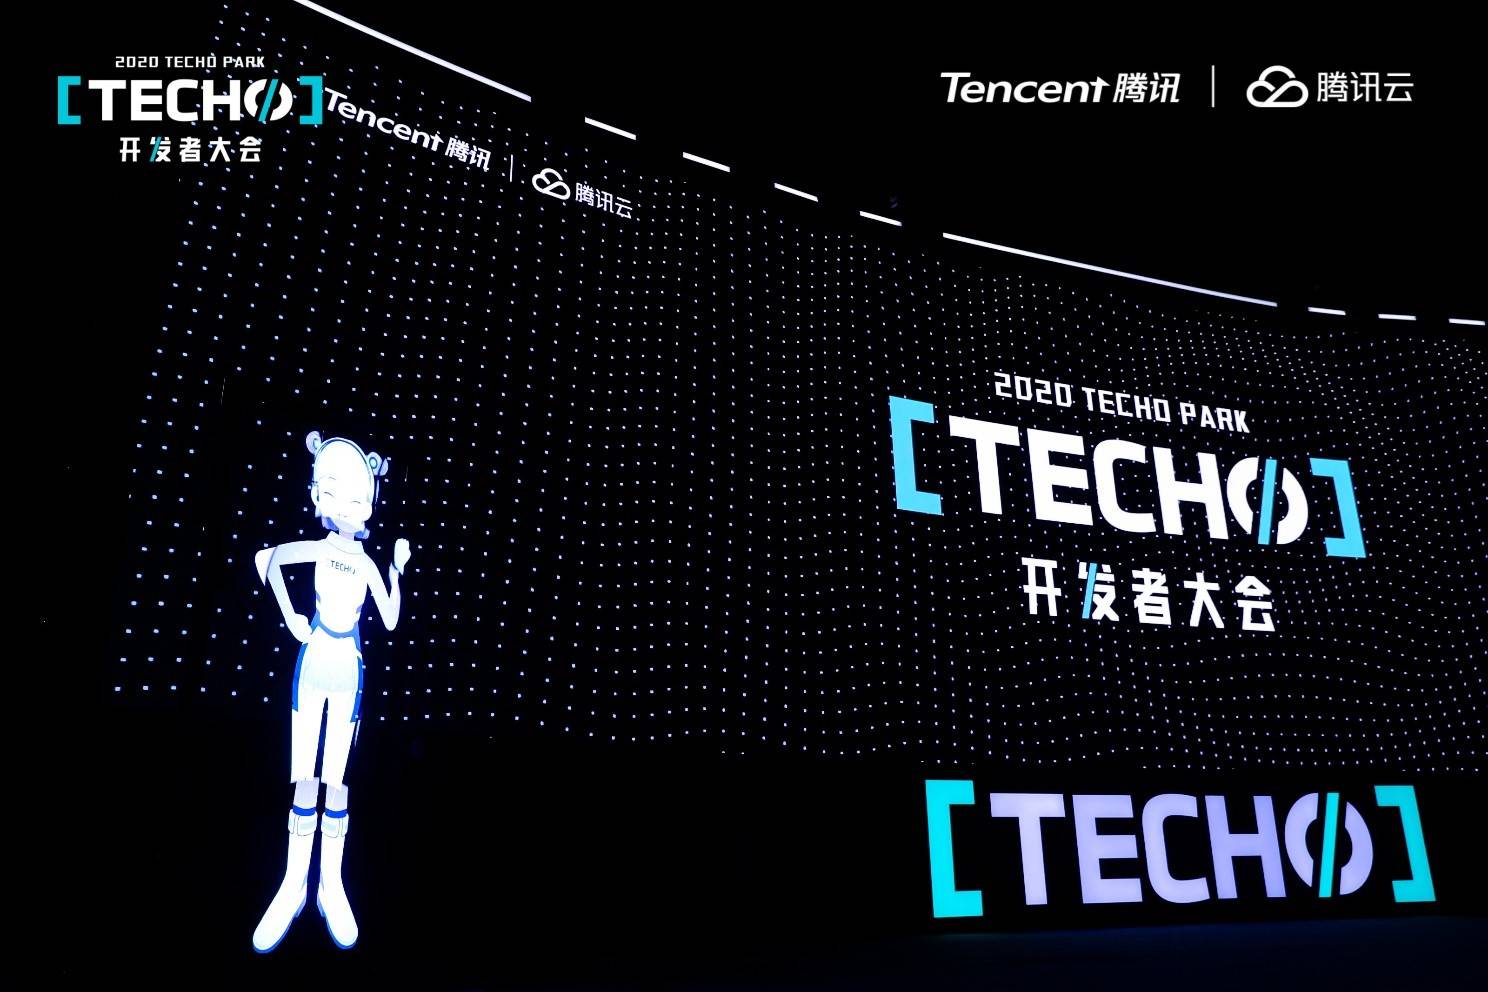 大会|腾讯Techo Park开发者大会正式召开，发布云原生线路图、云梯计划